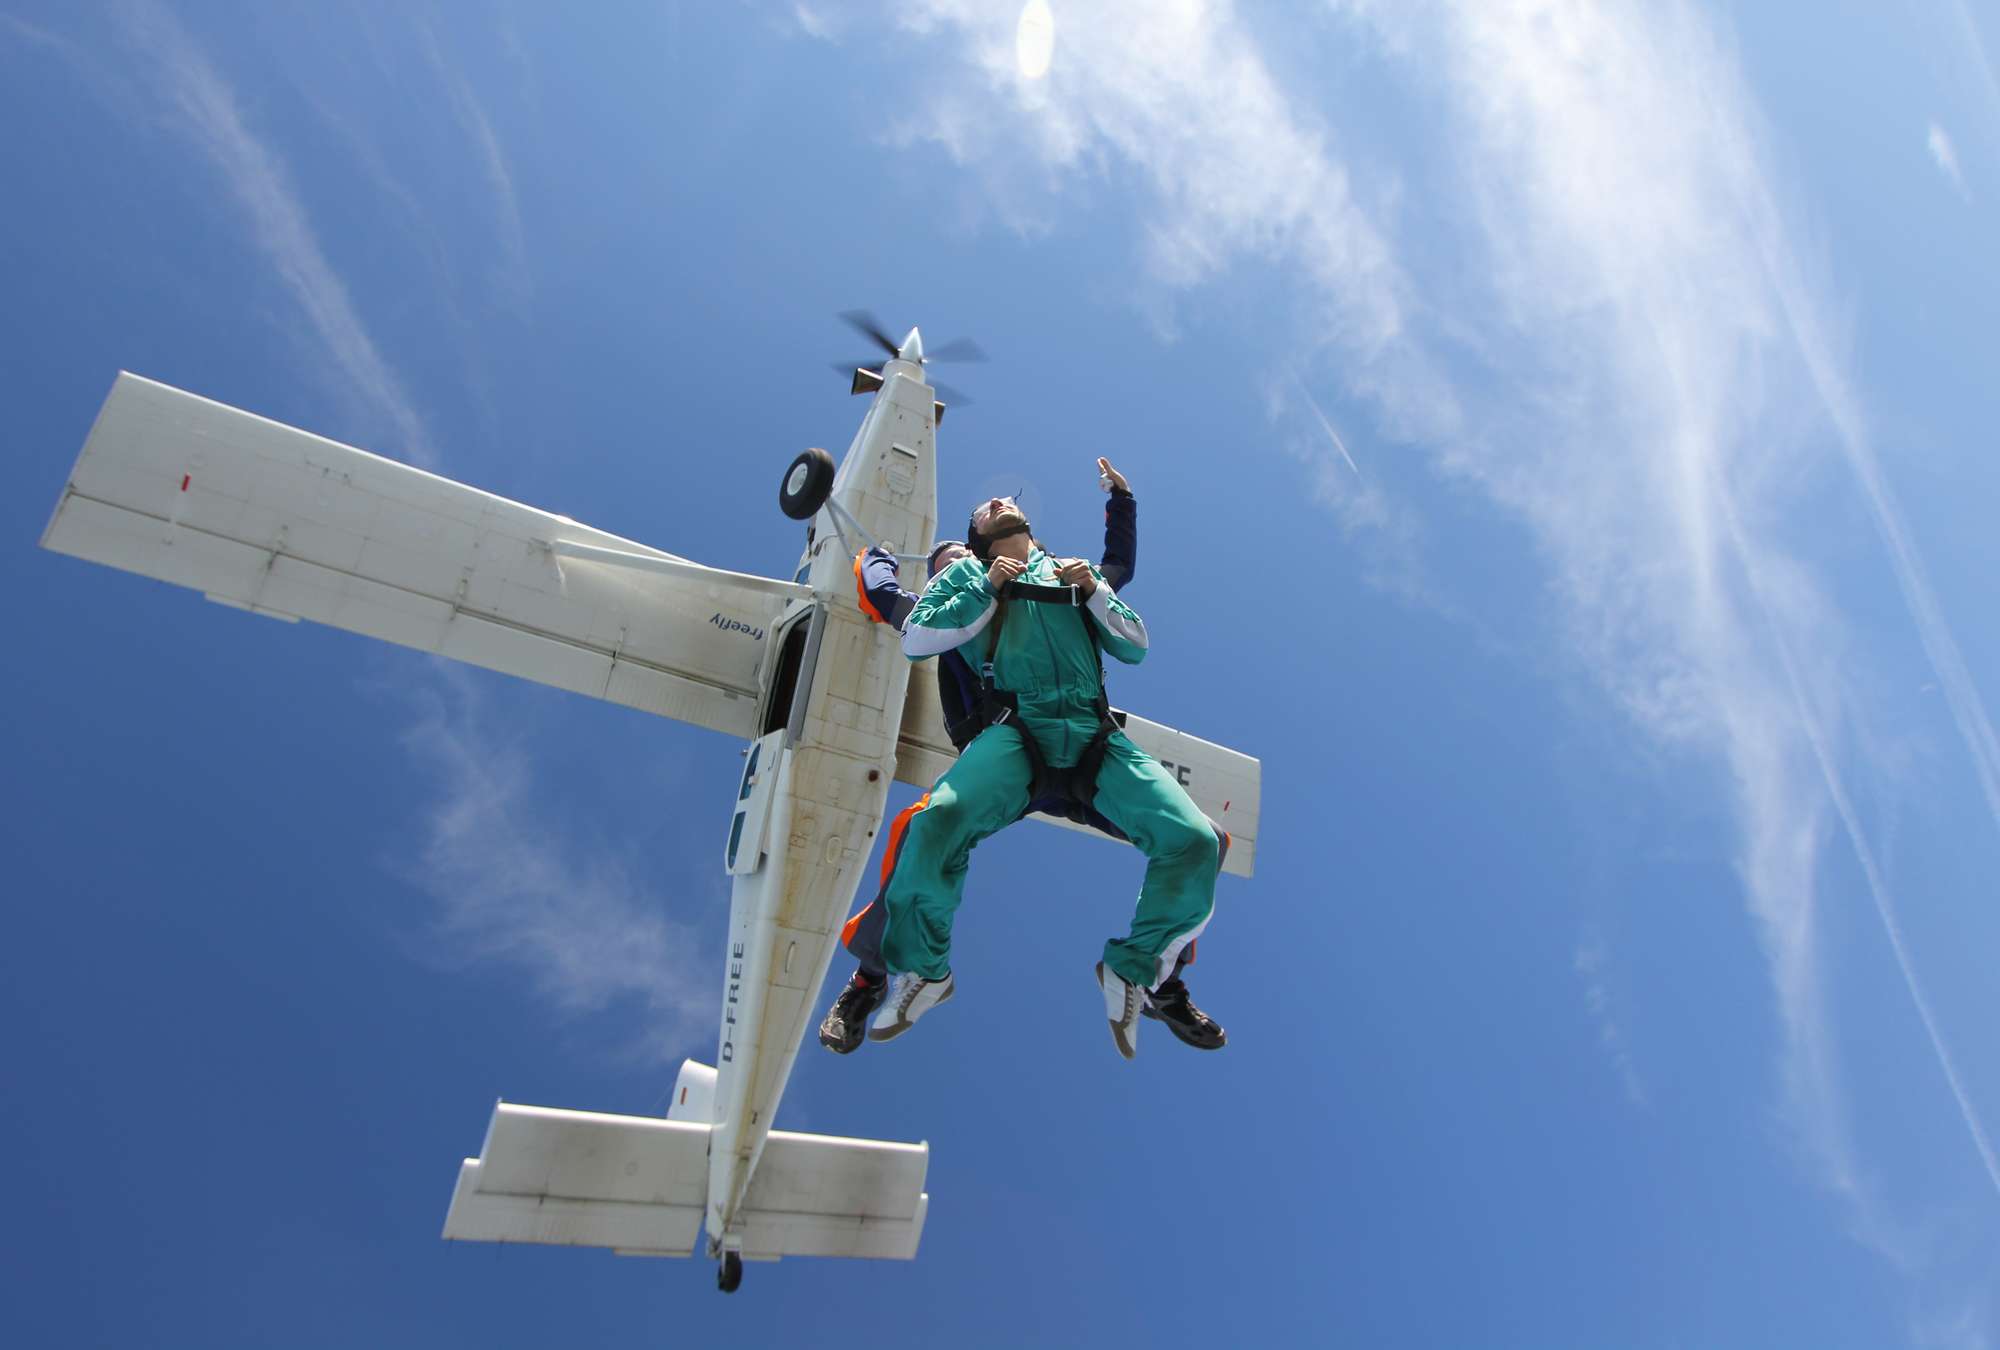             Fondo de pantalla de Paracaídas - Salto en tándem y vista al cielo
        